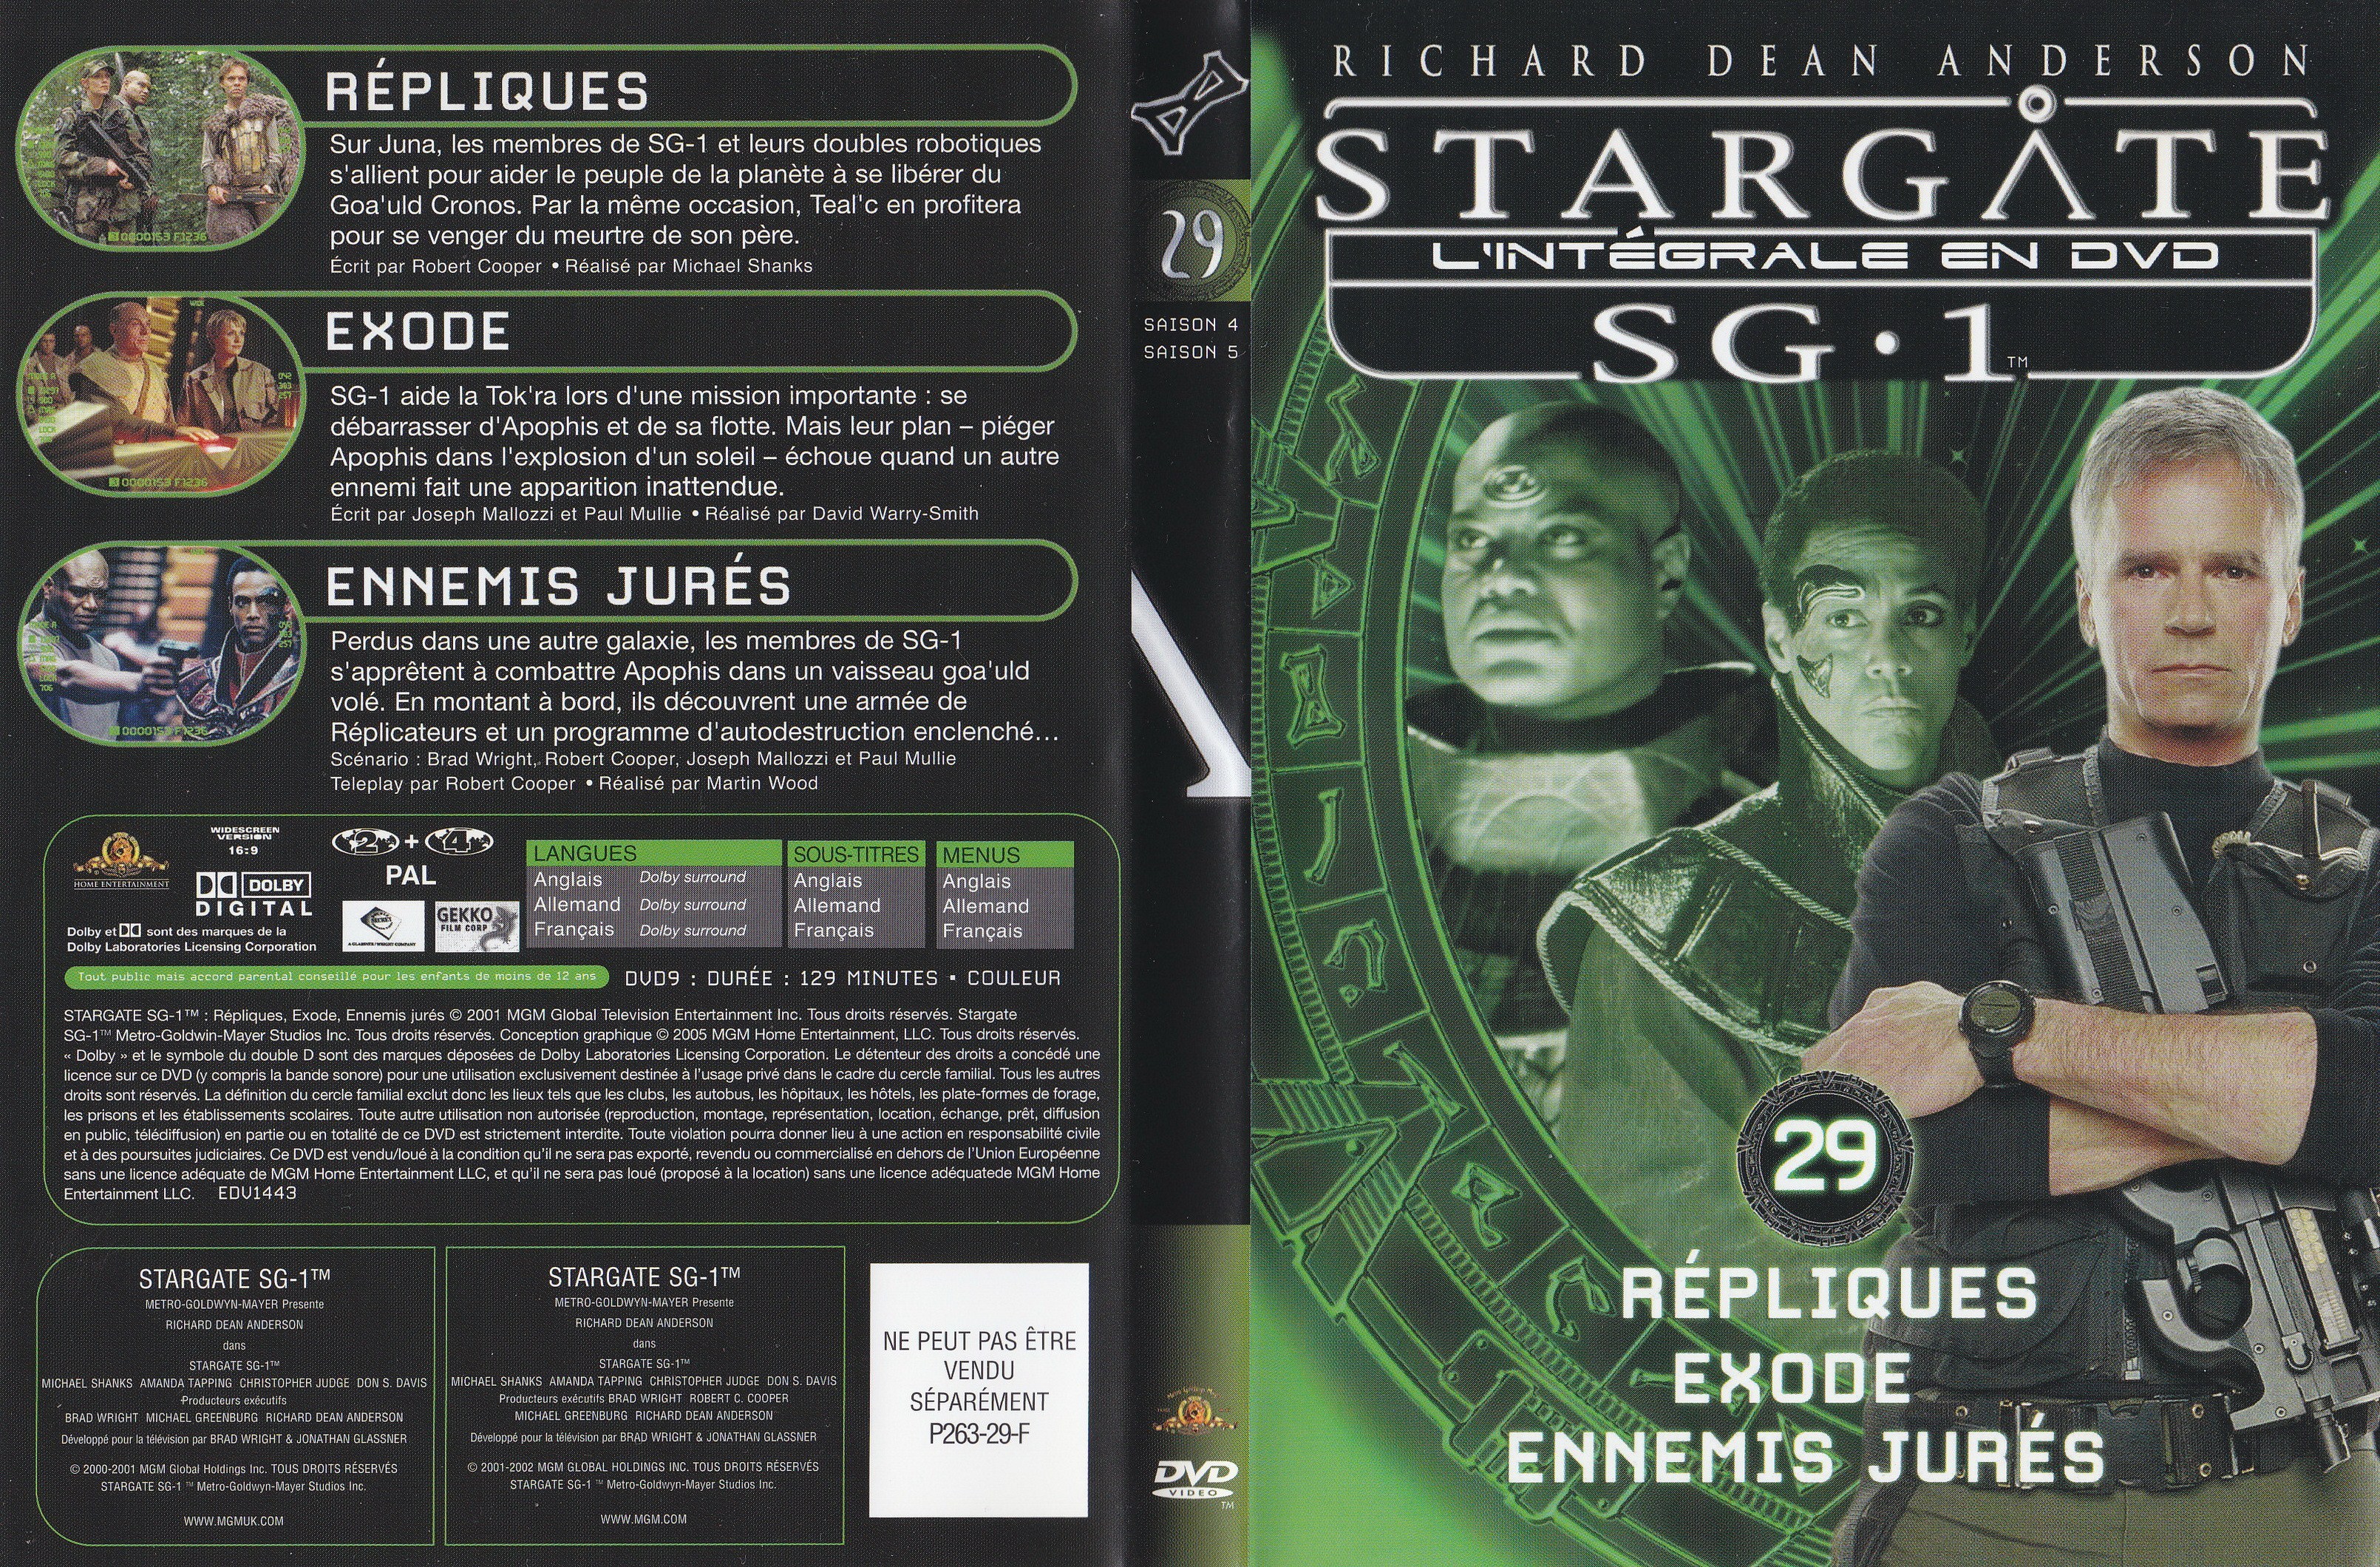 Stargate SG1 Intgrale Saison 4-5 vol 29